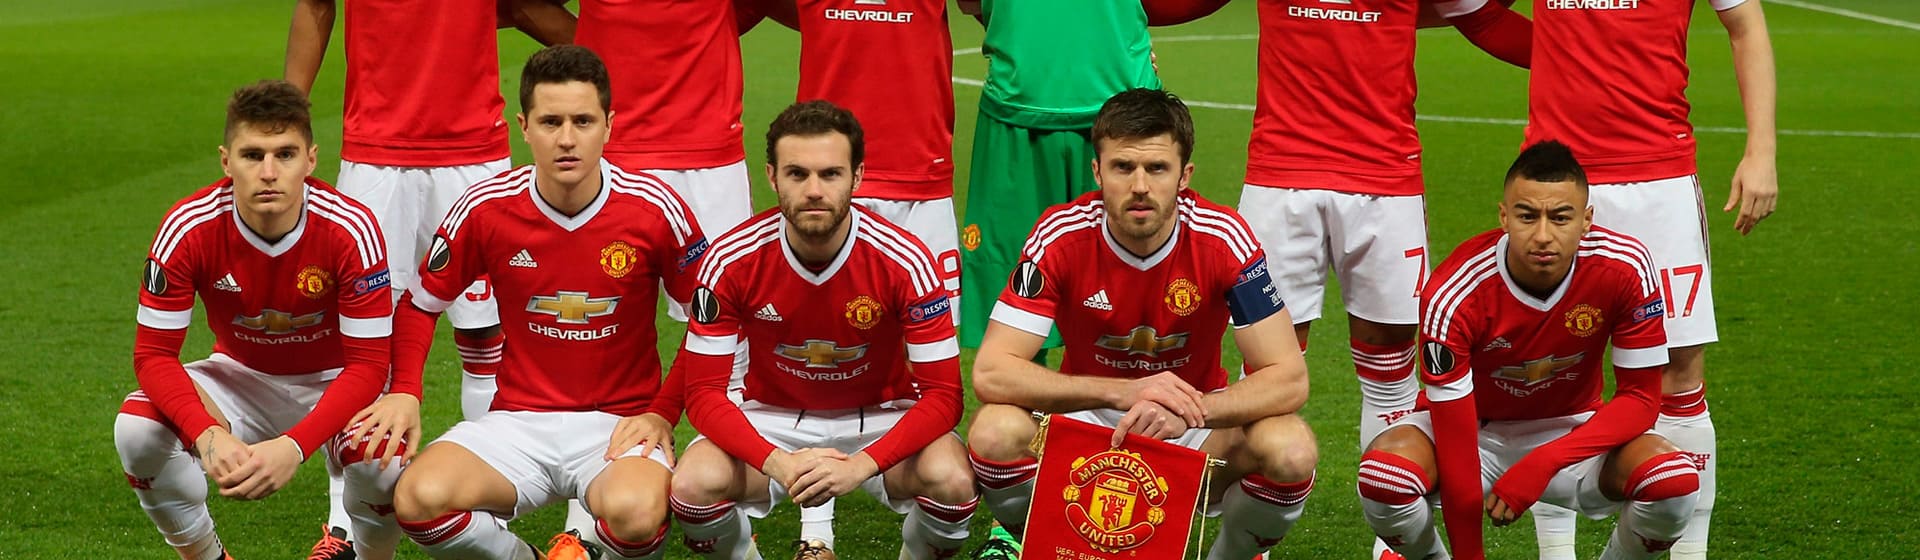 FC Manchester United - Мерч и одежда с атрибутикой